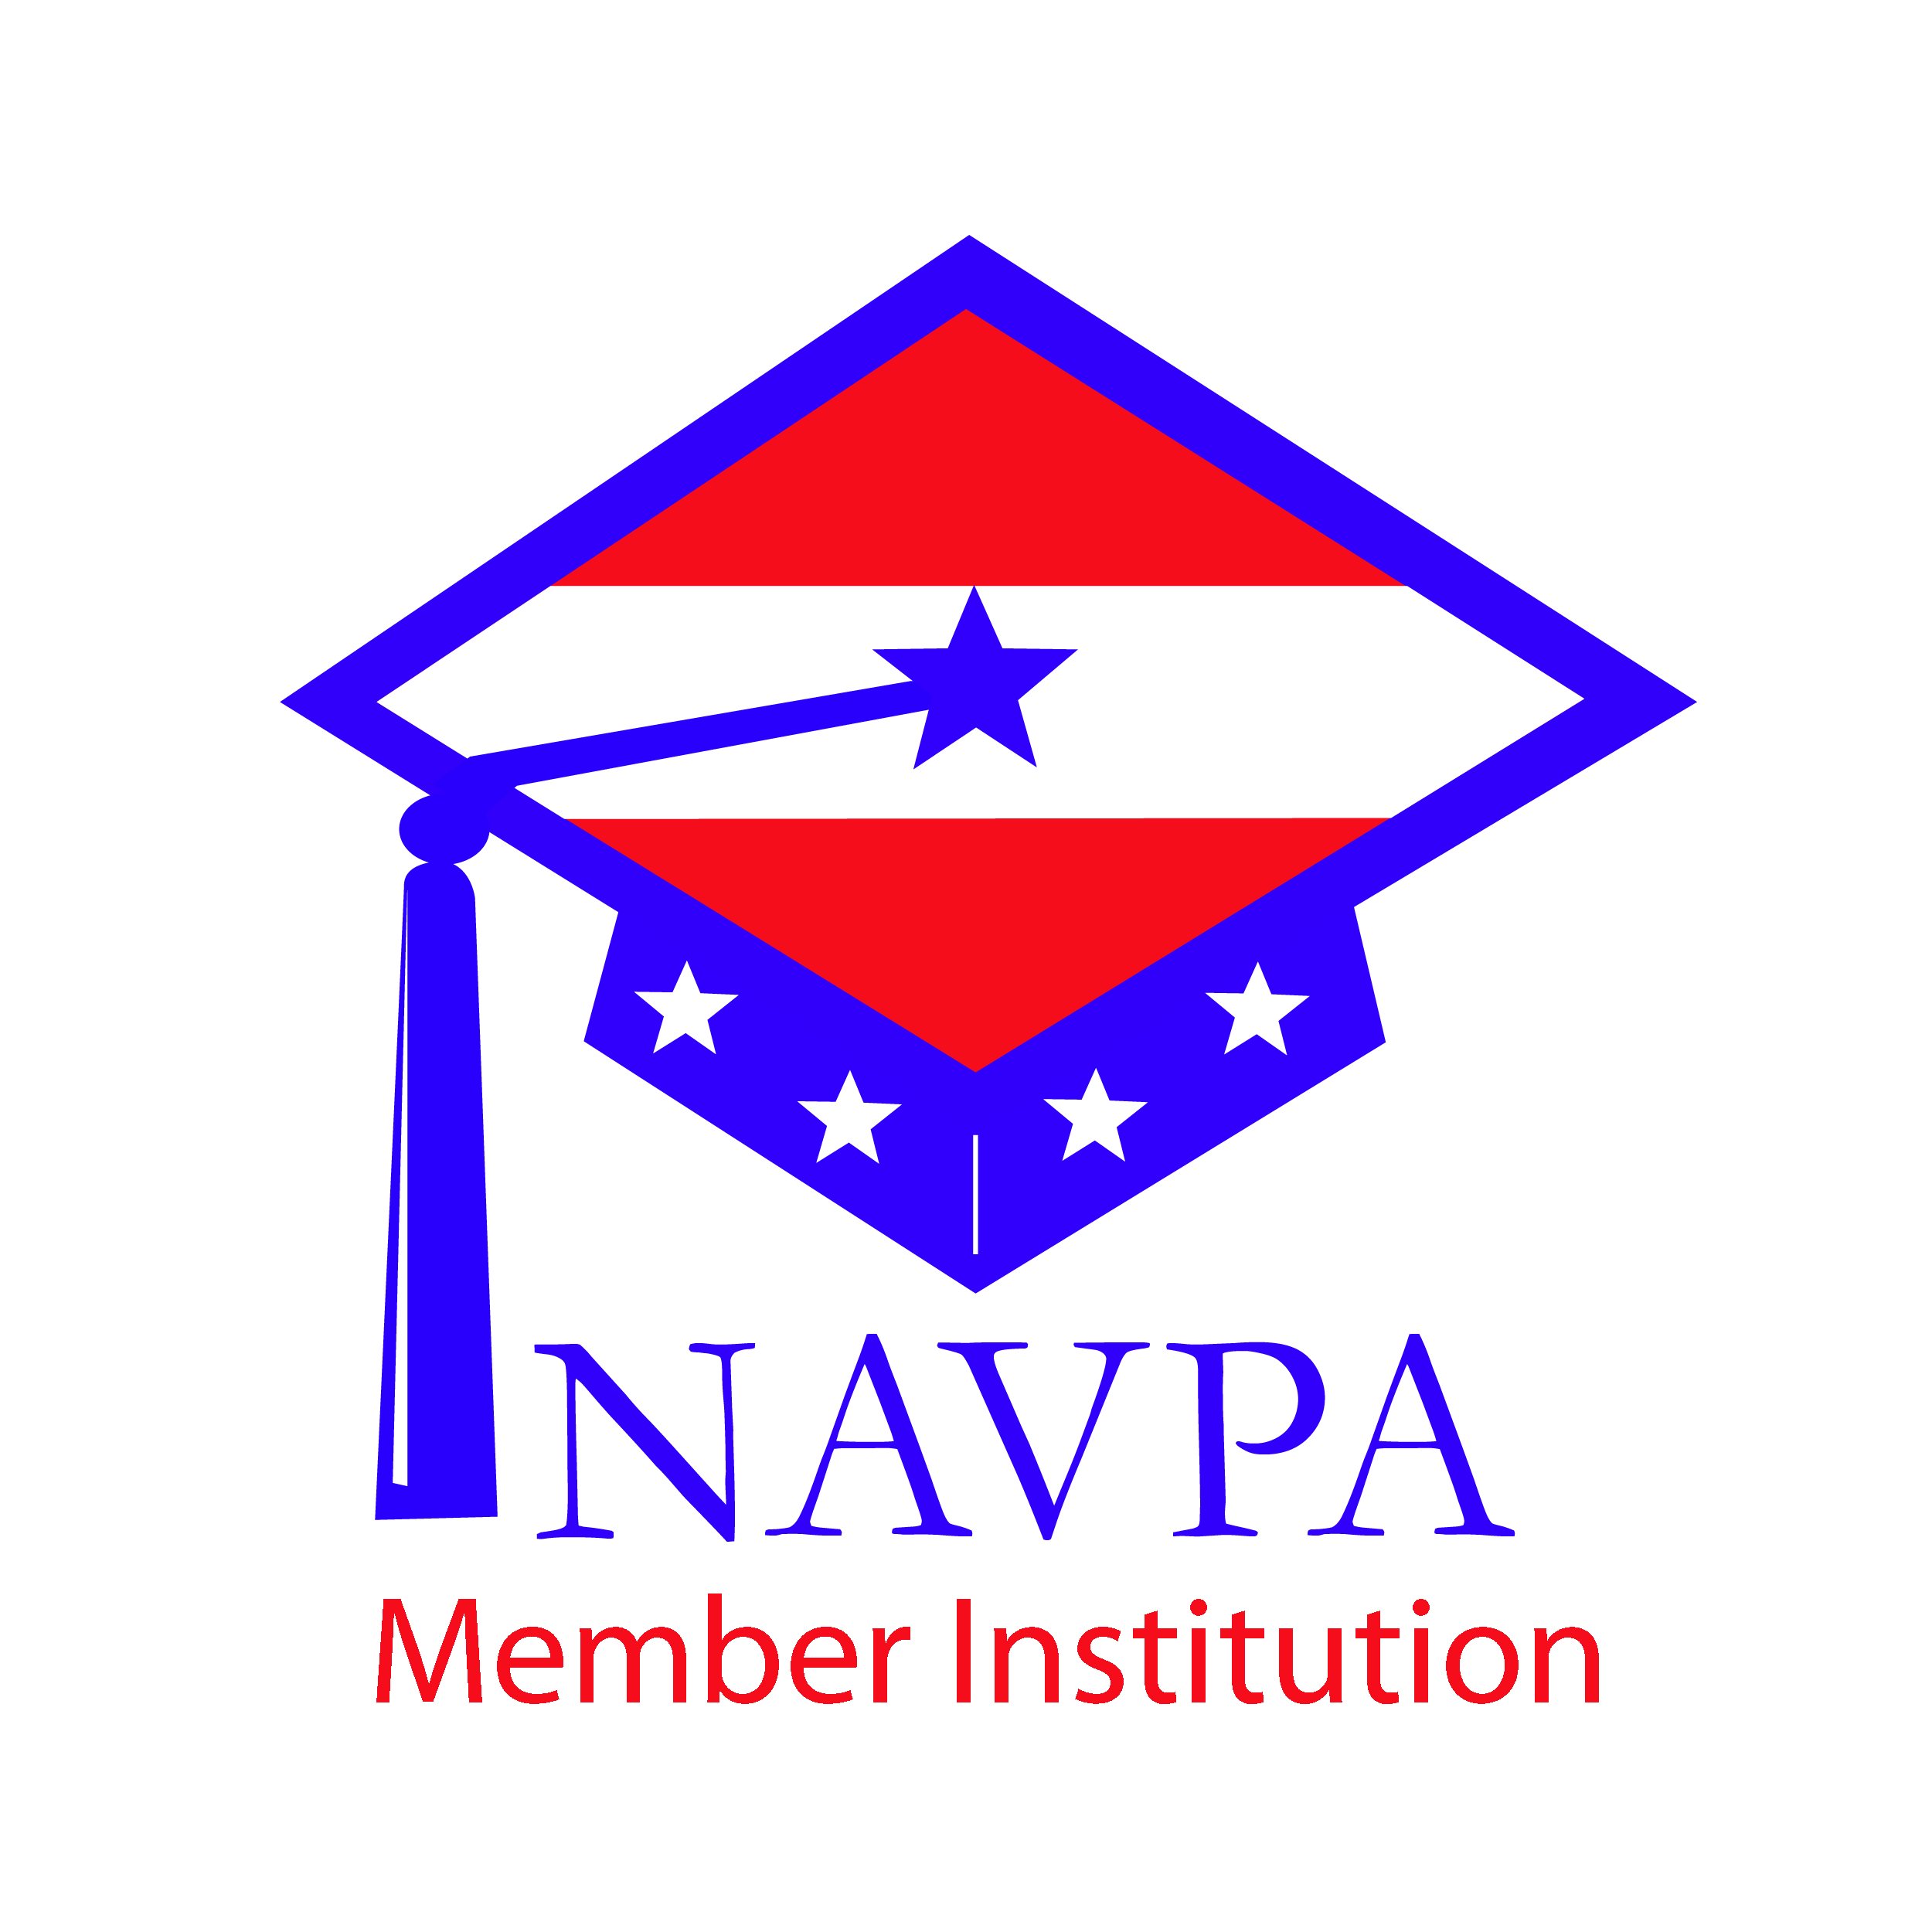 NAVPA member logo